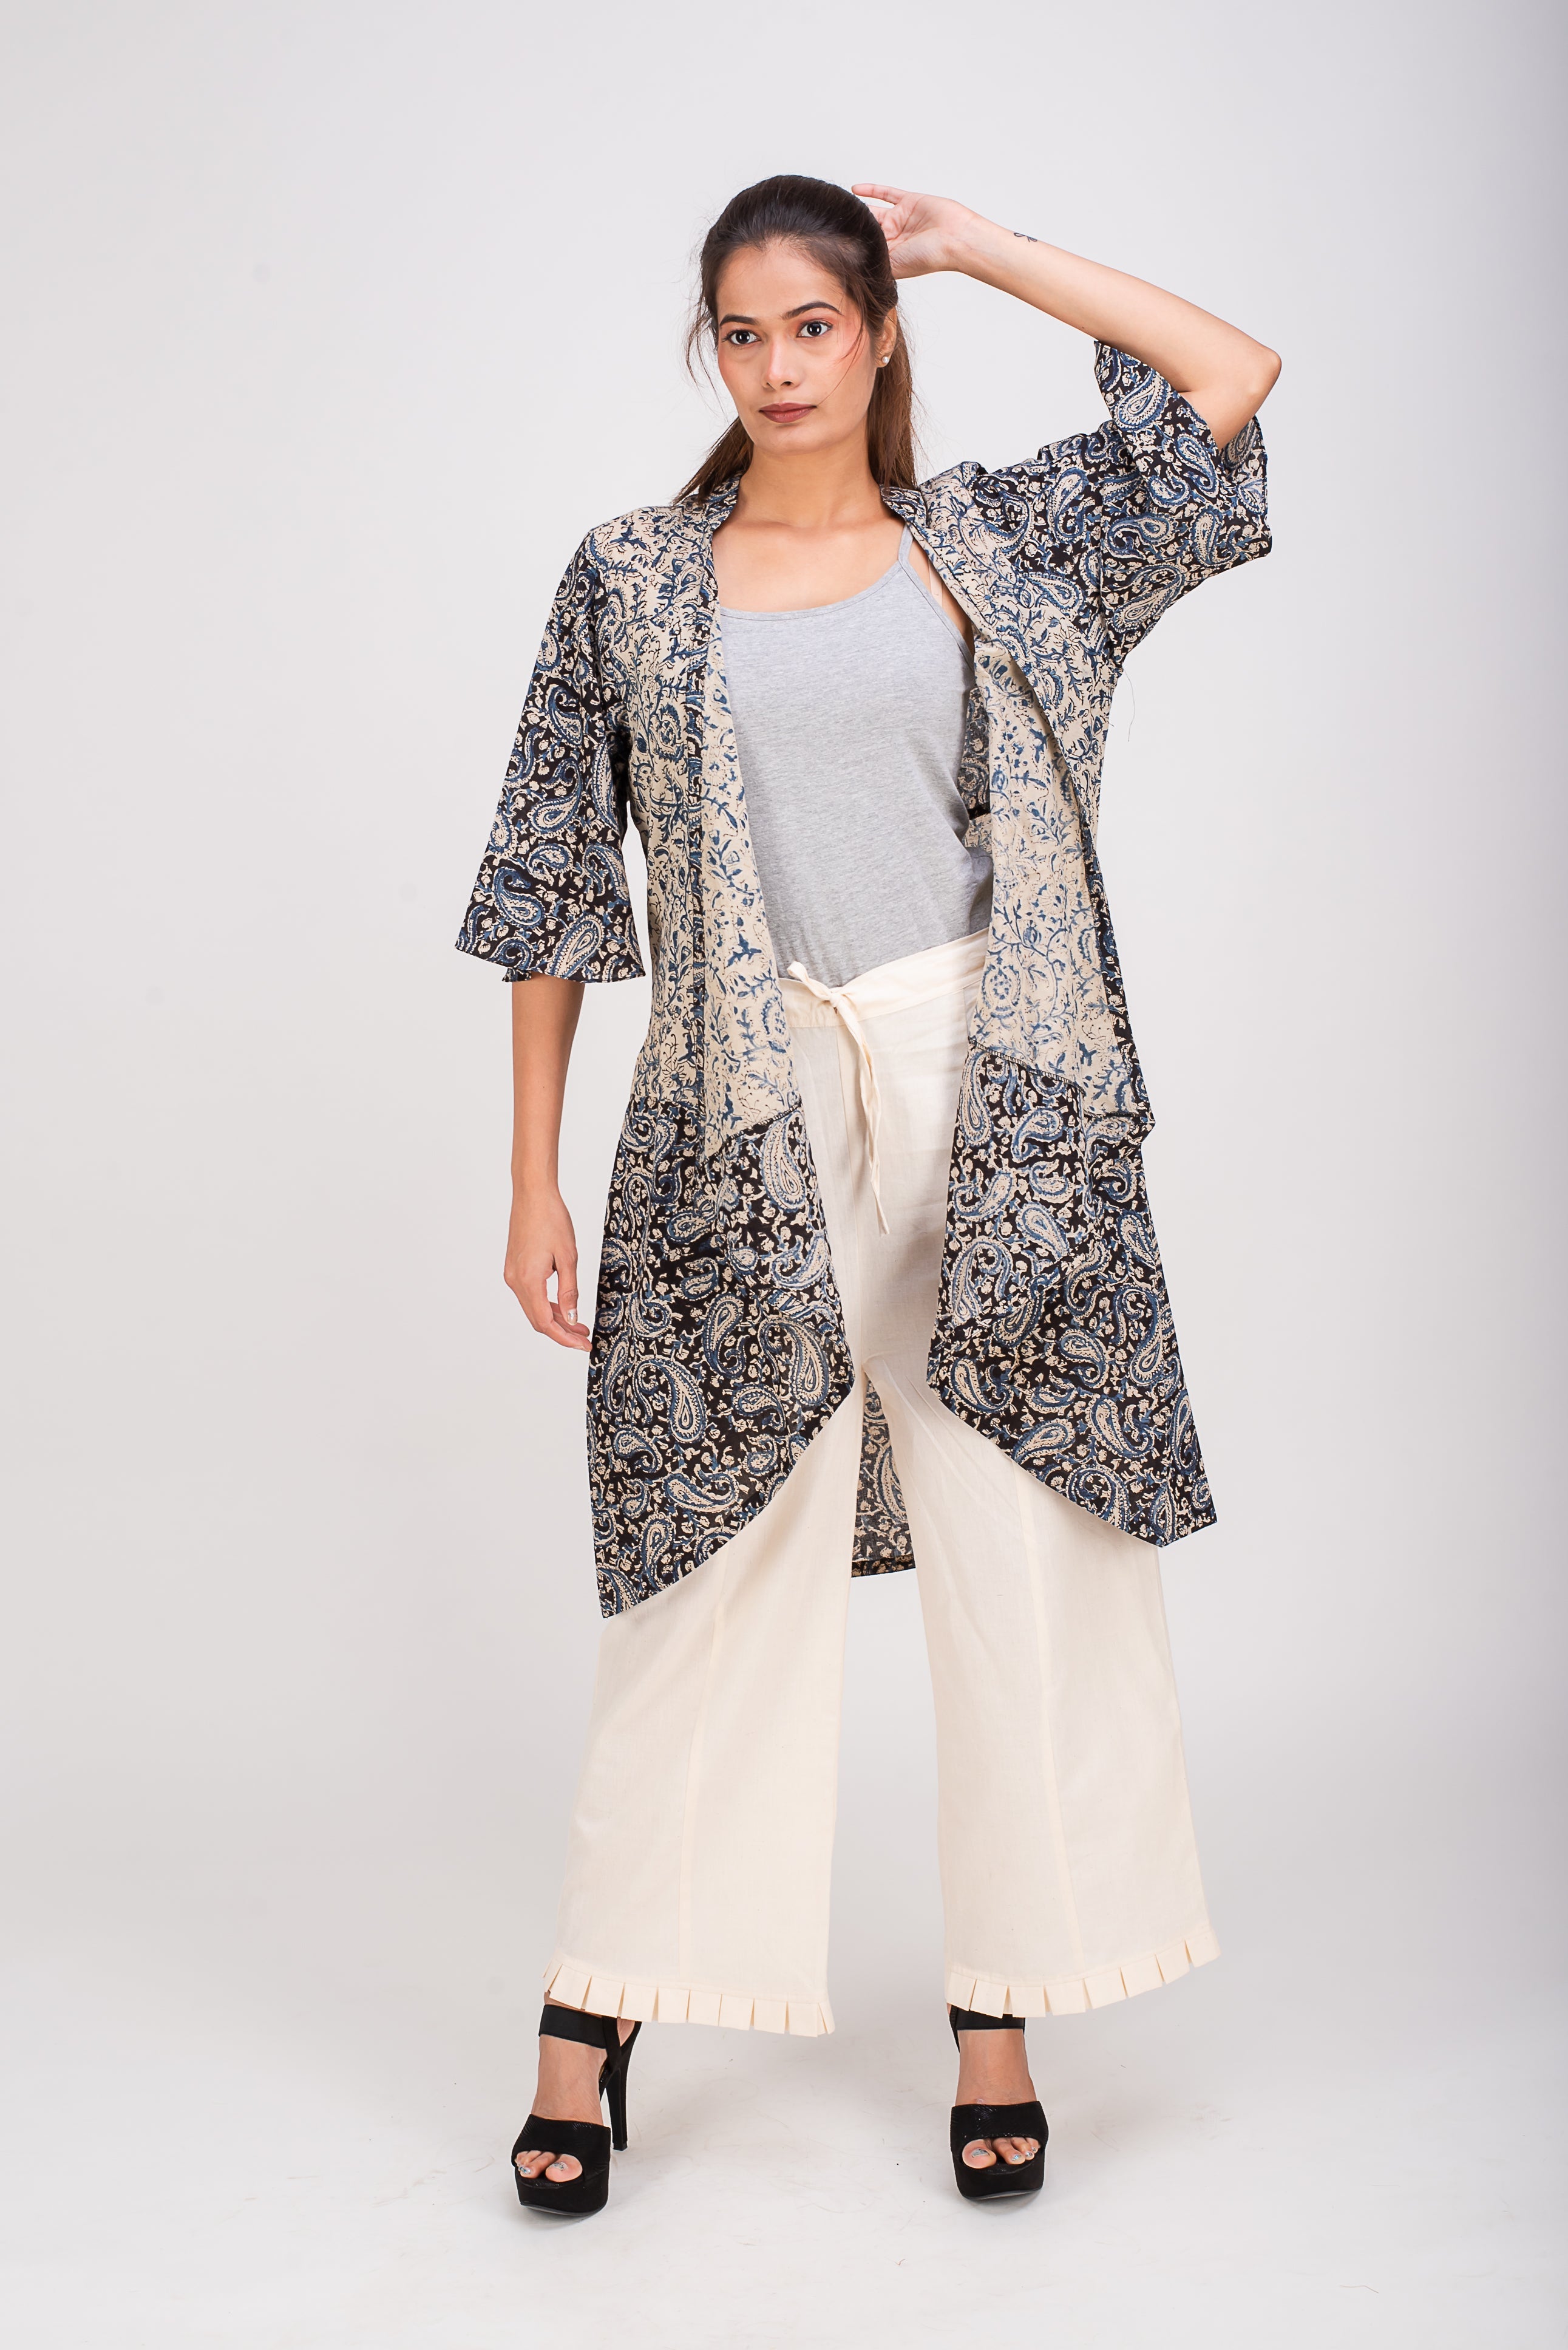 513- 153 Whitelotus "Kimono" Women's coat